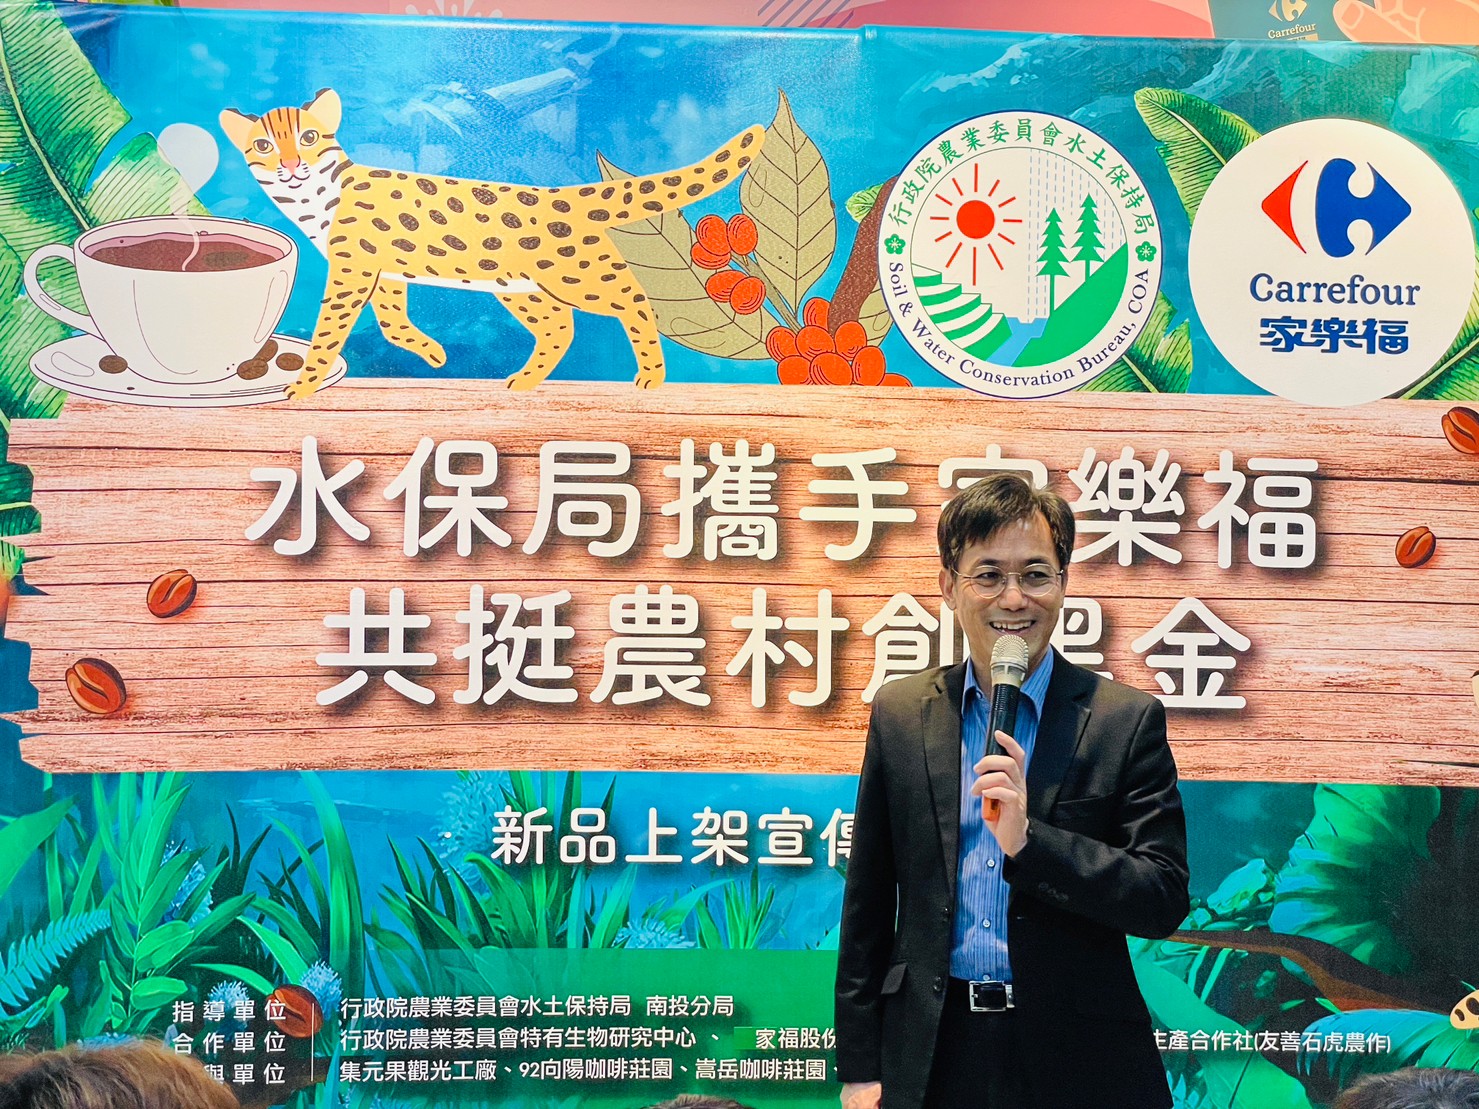 水保局南投分局分局長陳榮俊與家樂福合作推動棲地共享，倡導友善環境生產作物，人與土地、動物都能共存